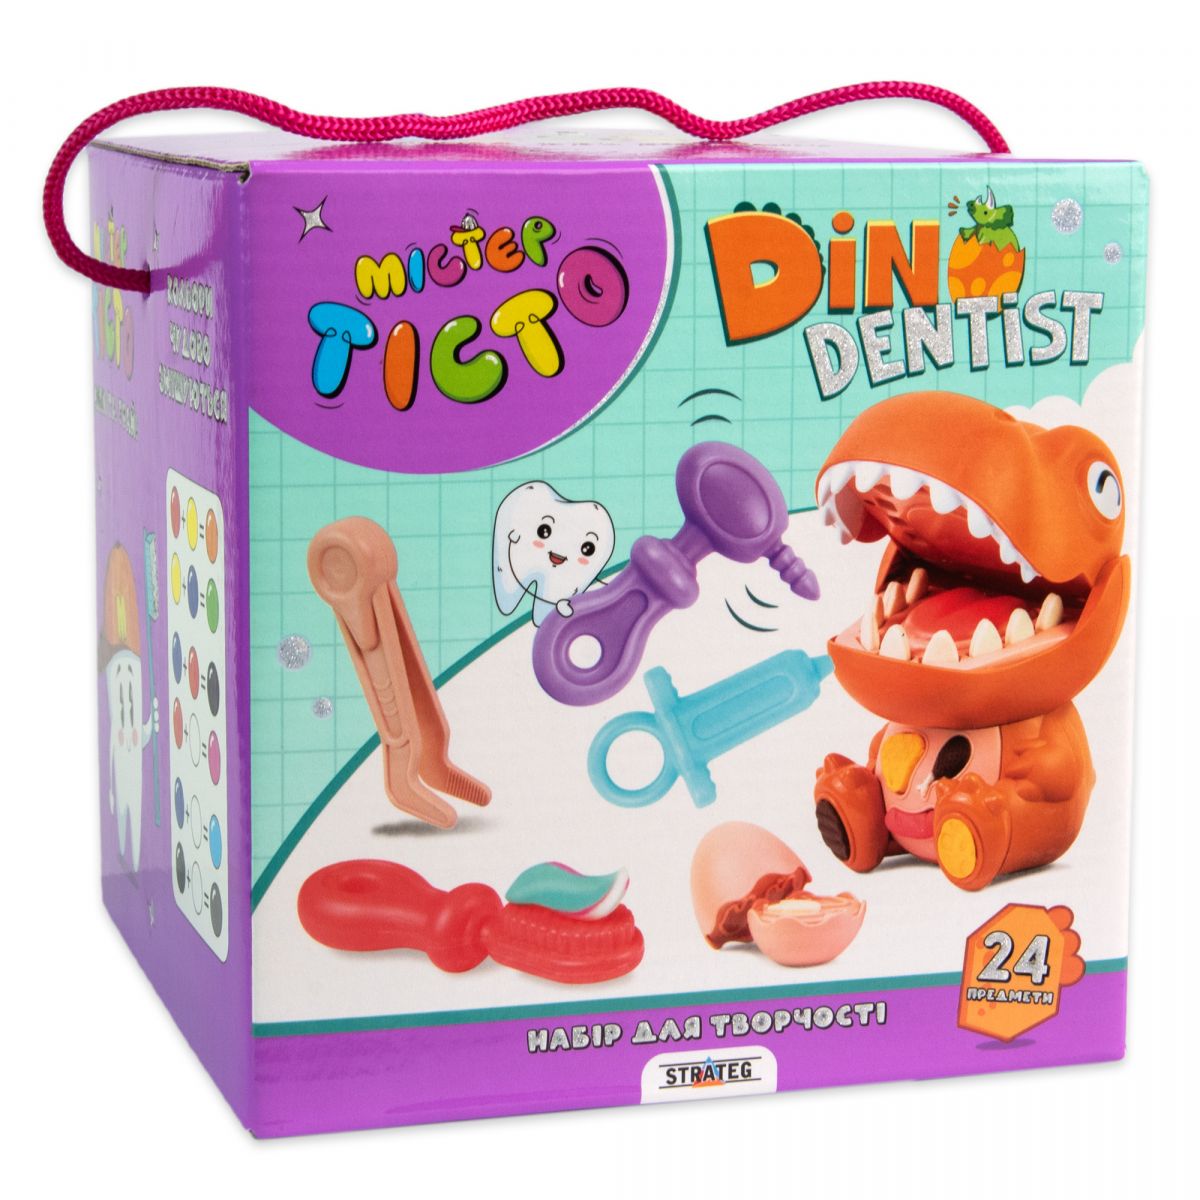 Набор для творчества "Мистер Тесто: Dino Dentist" (укр)